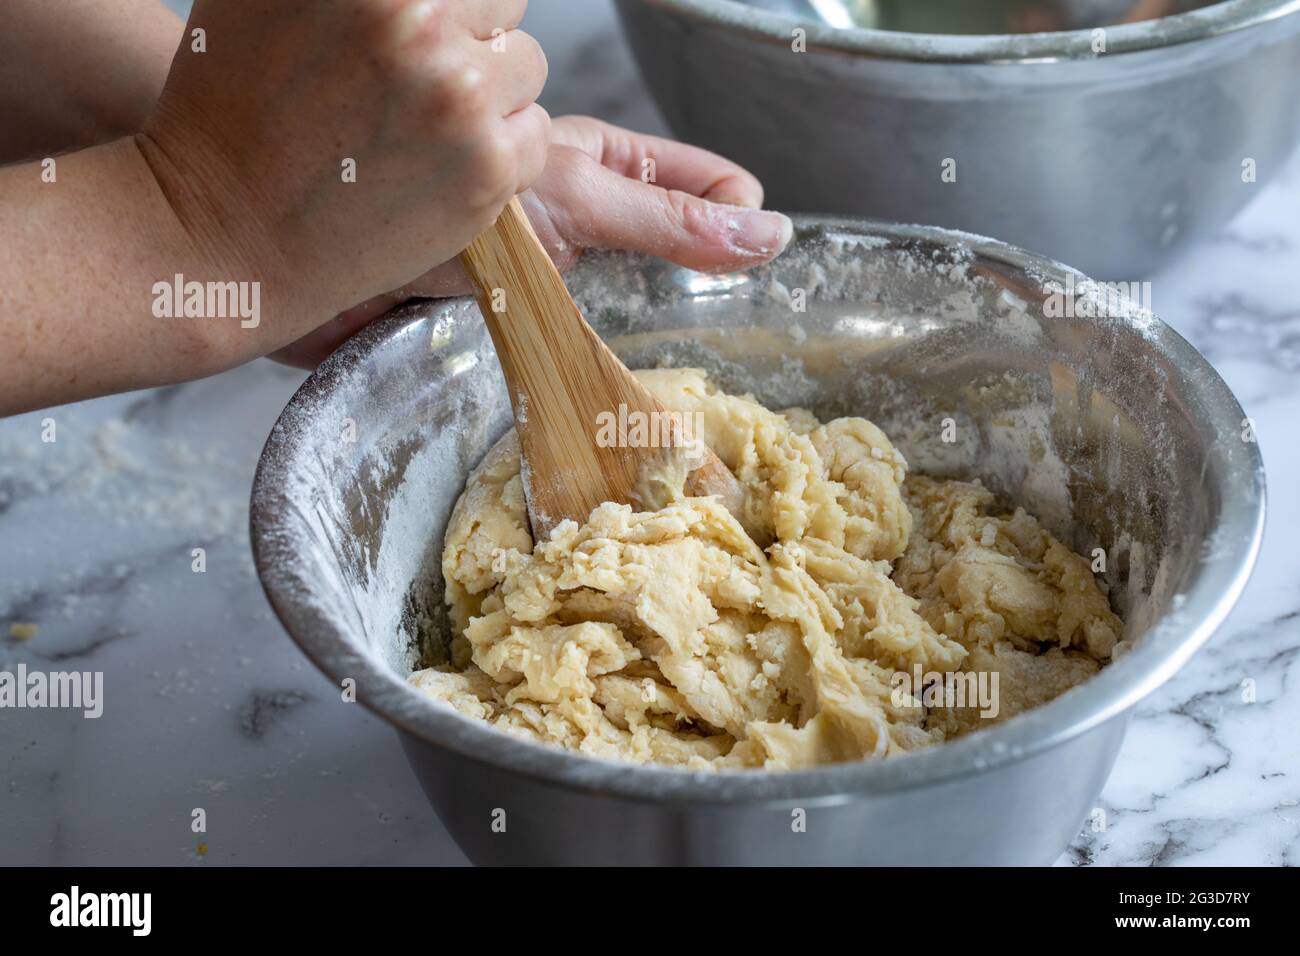 primo piano delle mani di una donna che tiene un cucchiaio di legno mescolando gli ingredienti in una ciotola rotonda di metallo su una superficie di marmo bianco Foto Stock